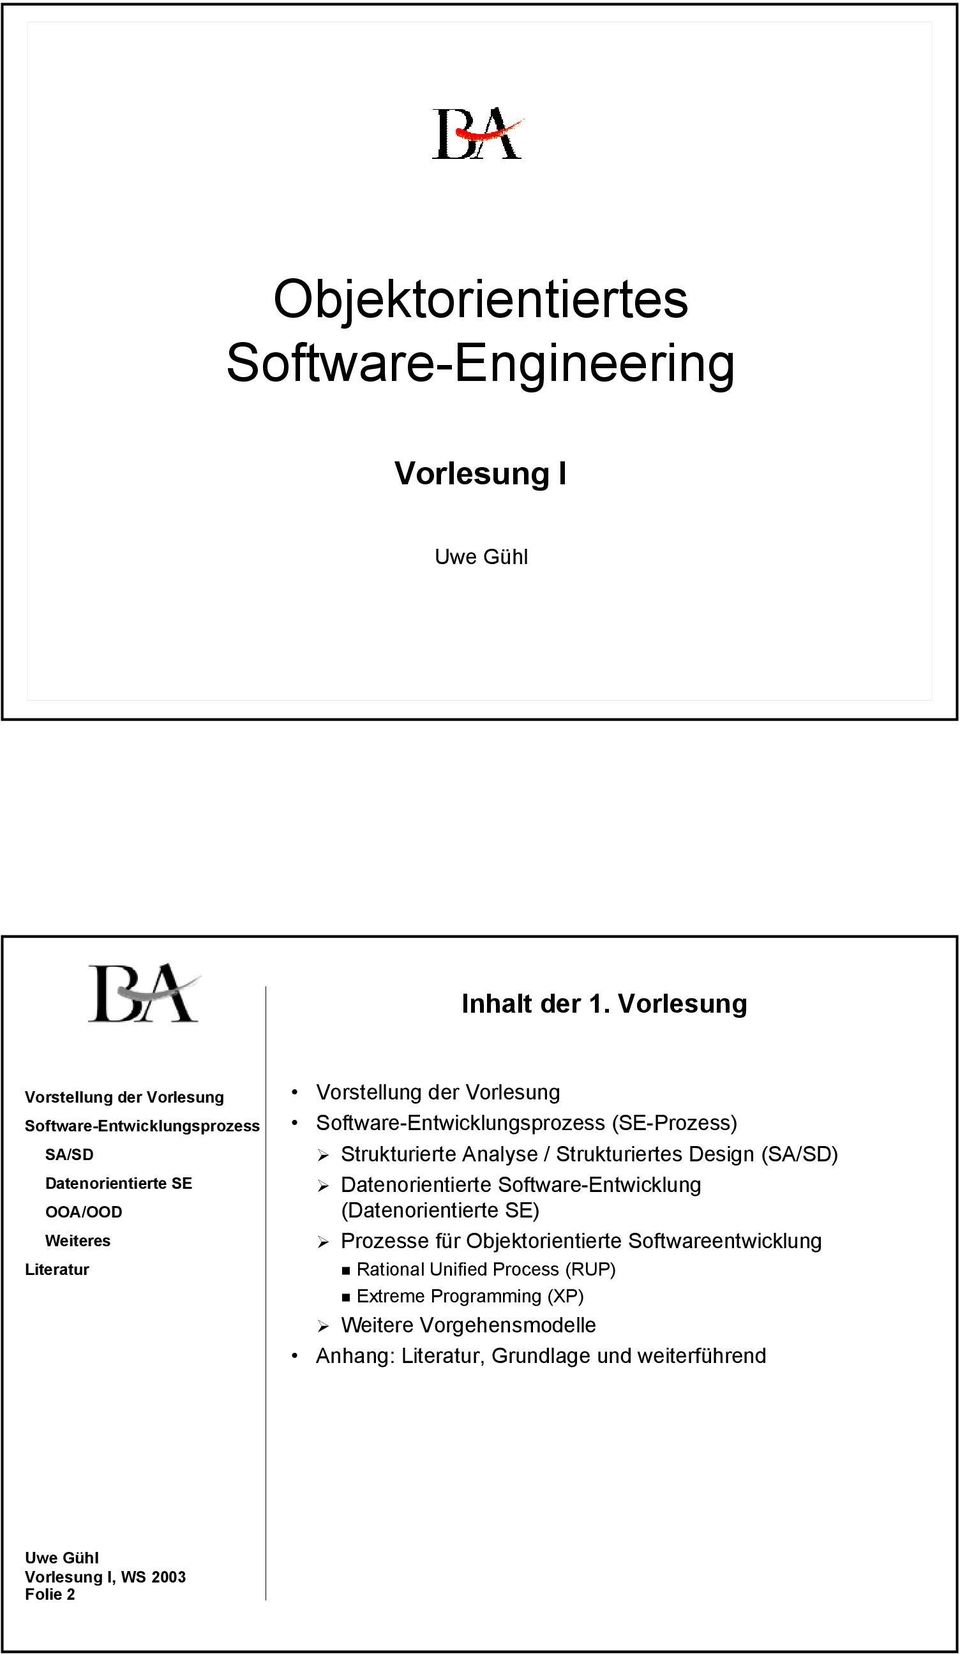 Software-Entwicklung () Prozesse für Objektorientierte Softwareentwicklung Rational